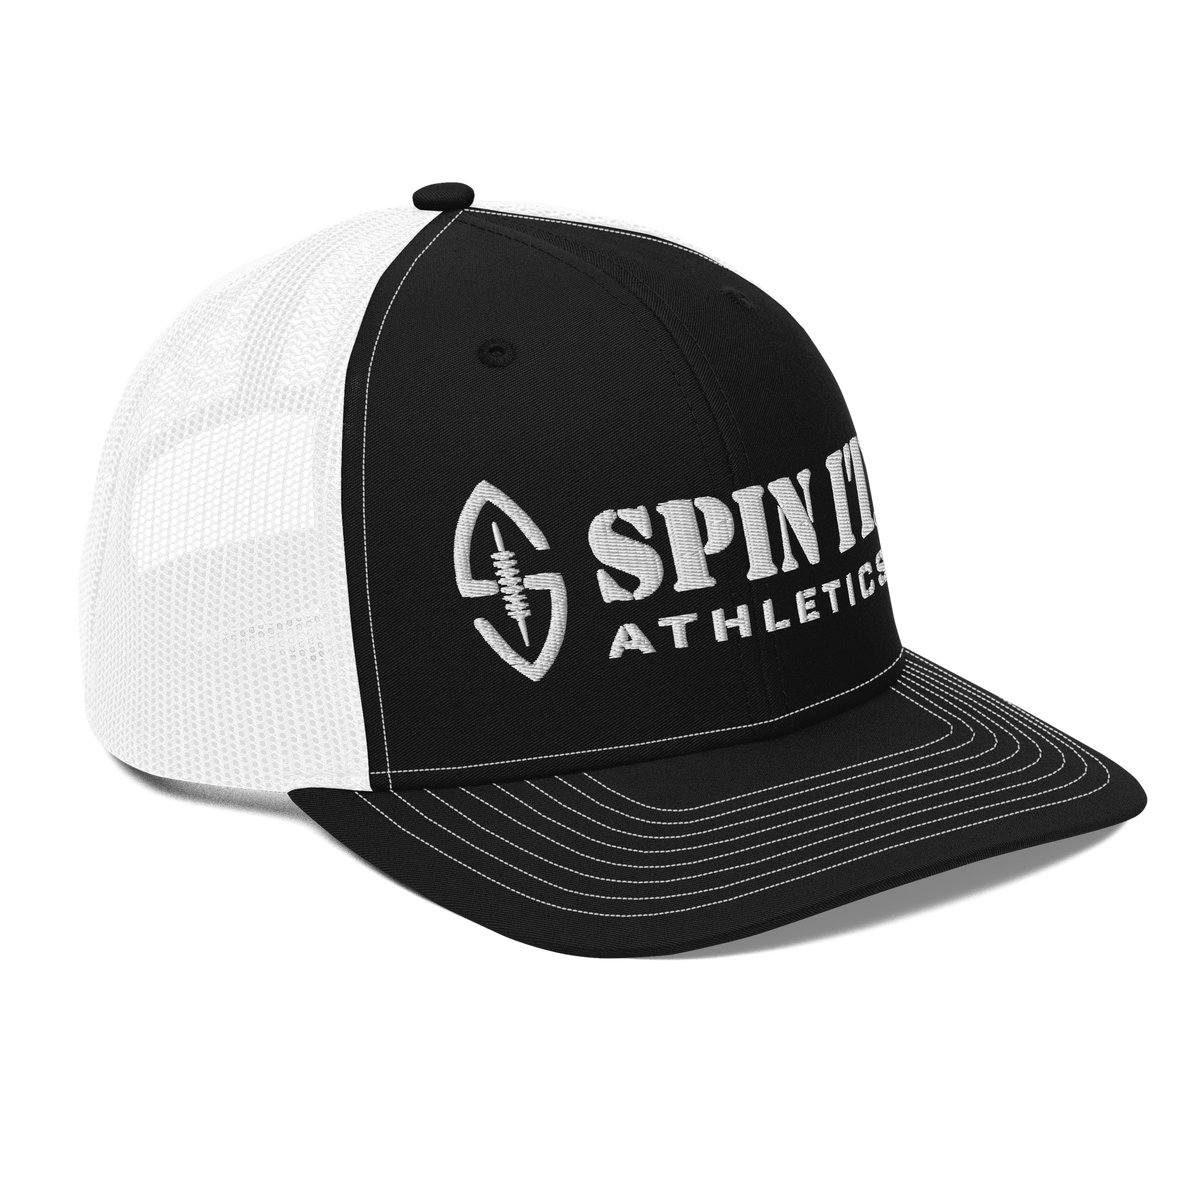 Spin It Black/White Trucker Hat - Living Easy®